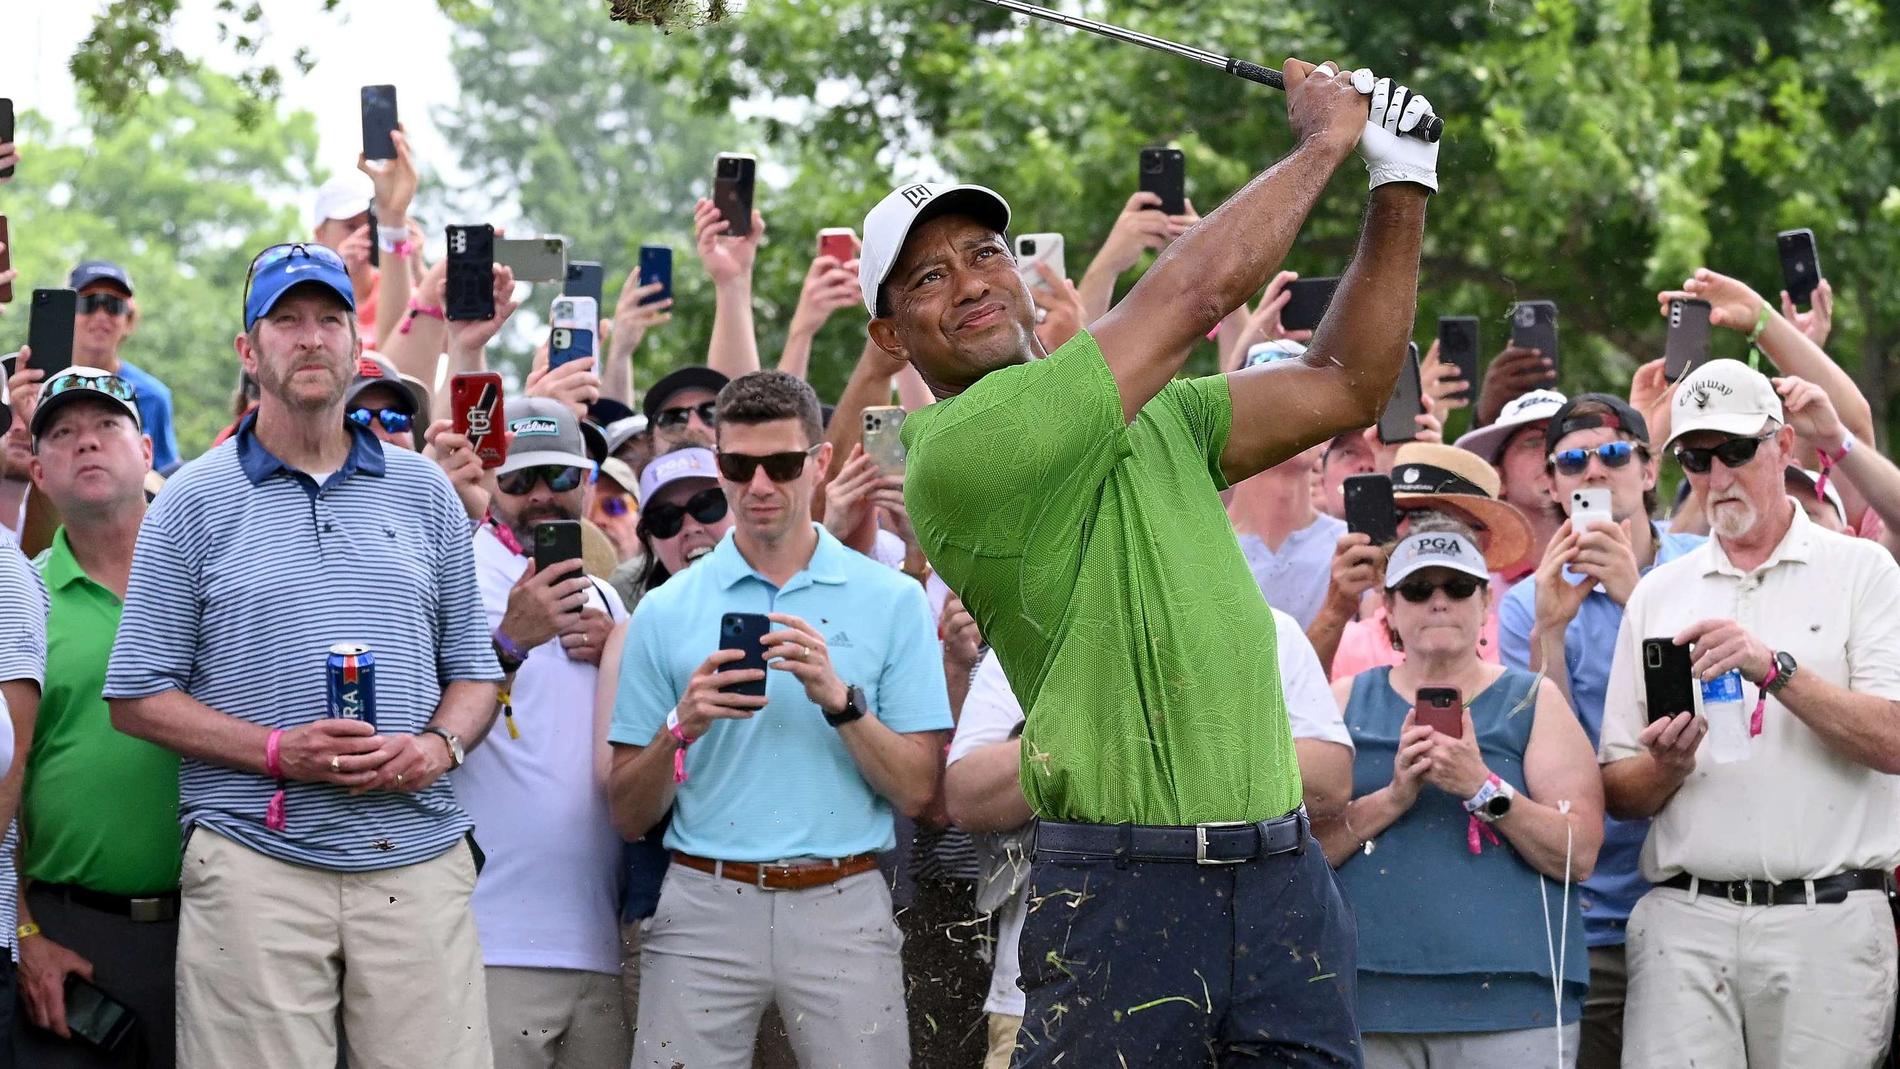 Alla i publikhavet utom en person, Mark, följde Tiger Woods med sina mobiltelefoner under PGA-mästerskapen. Nu har Mark fått ett avtal med ölmärket. Arkivbild.